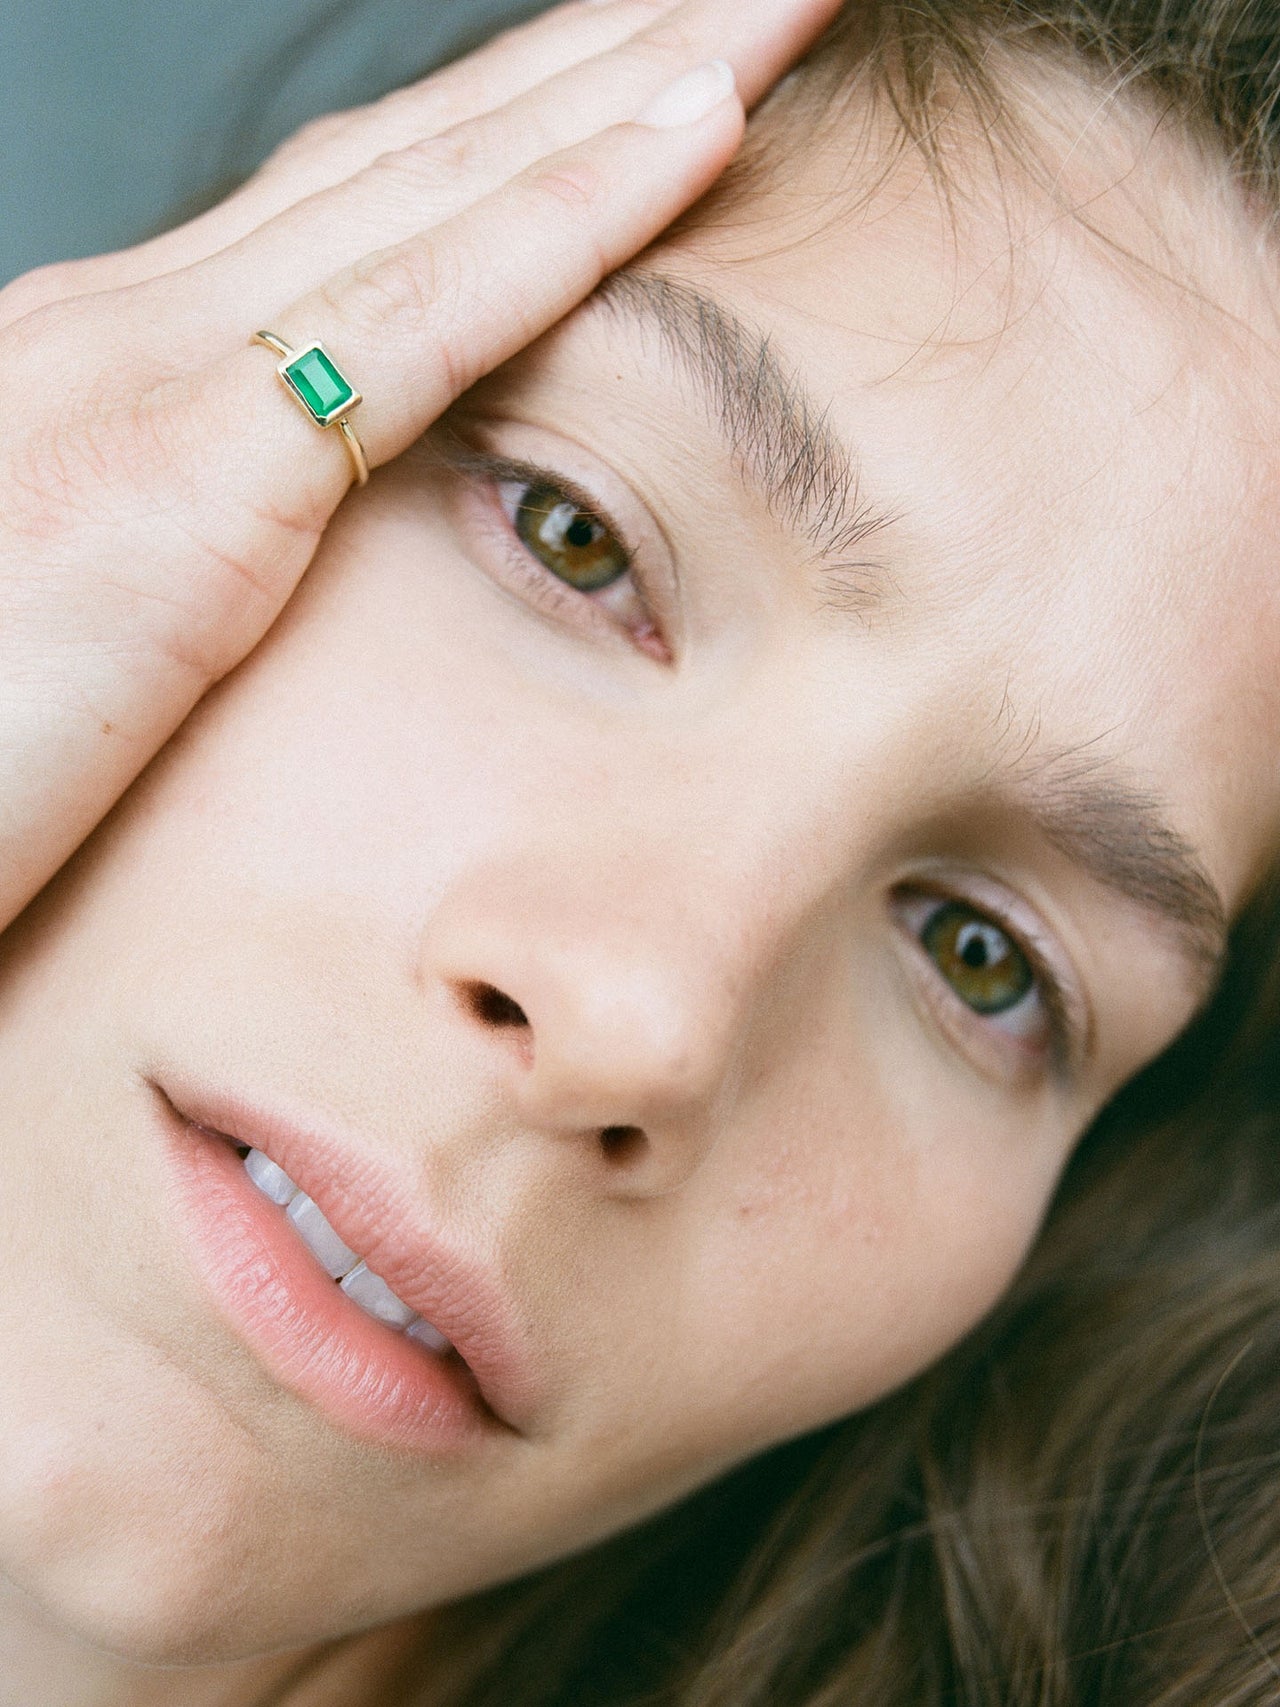 Emerald Cut Bezel Ring V.i pictured on models pinky finger.